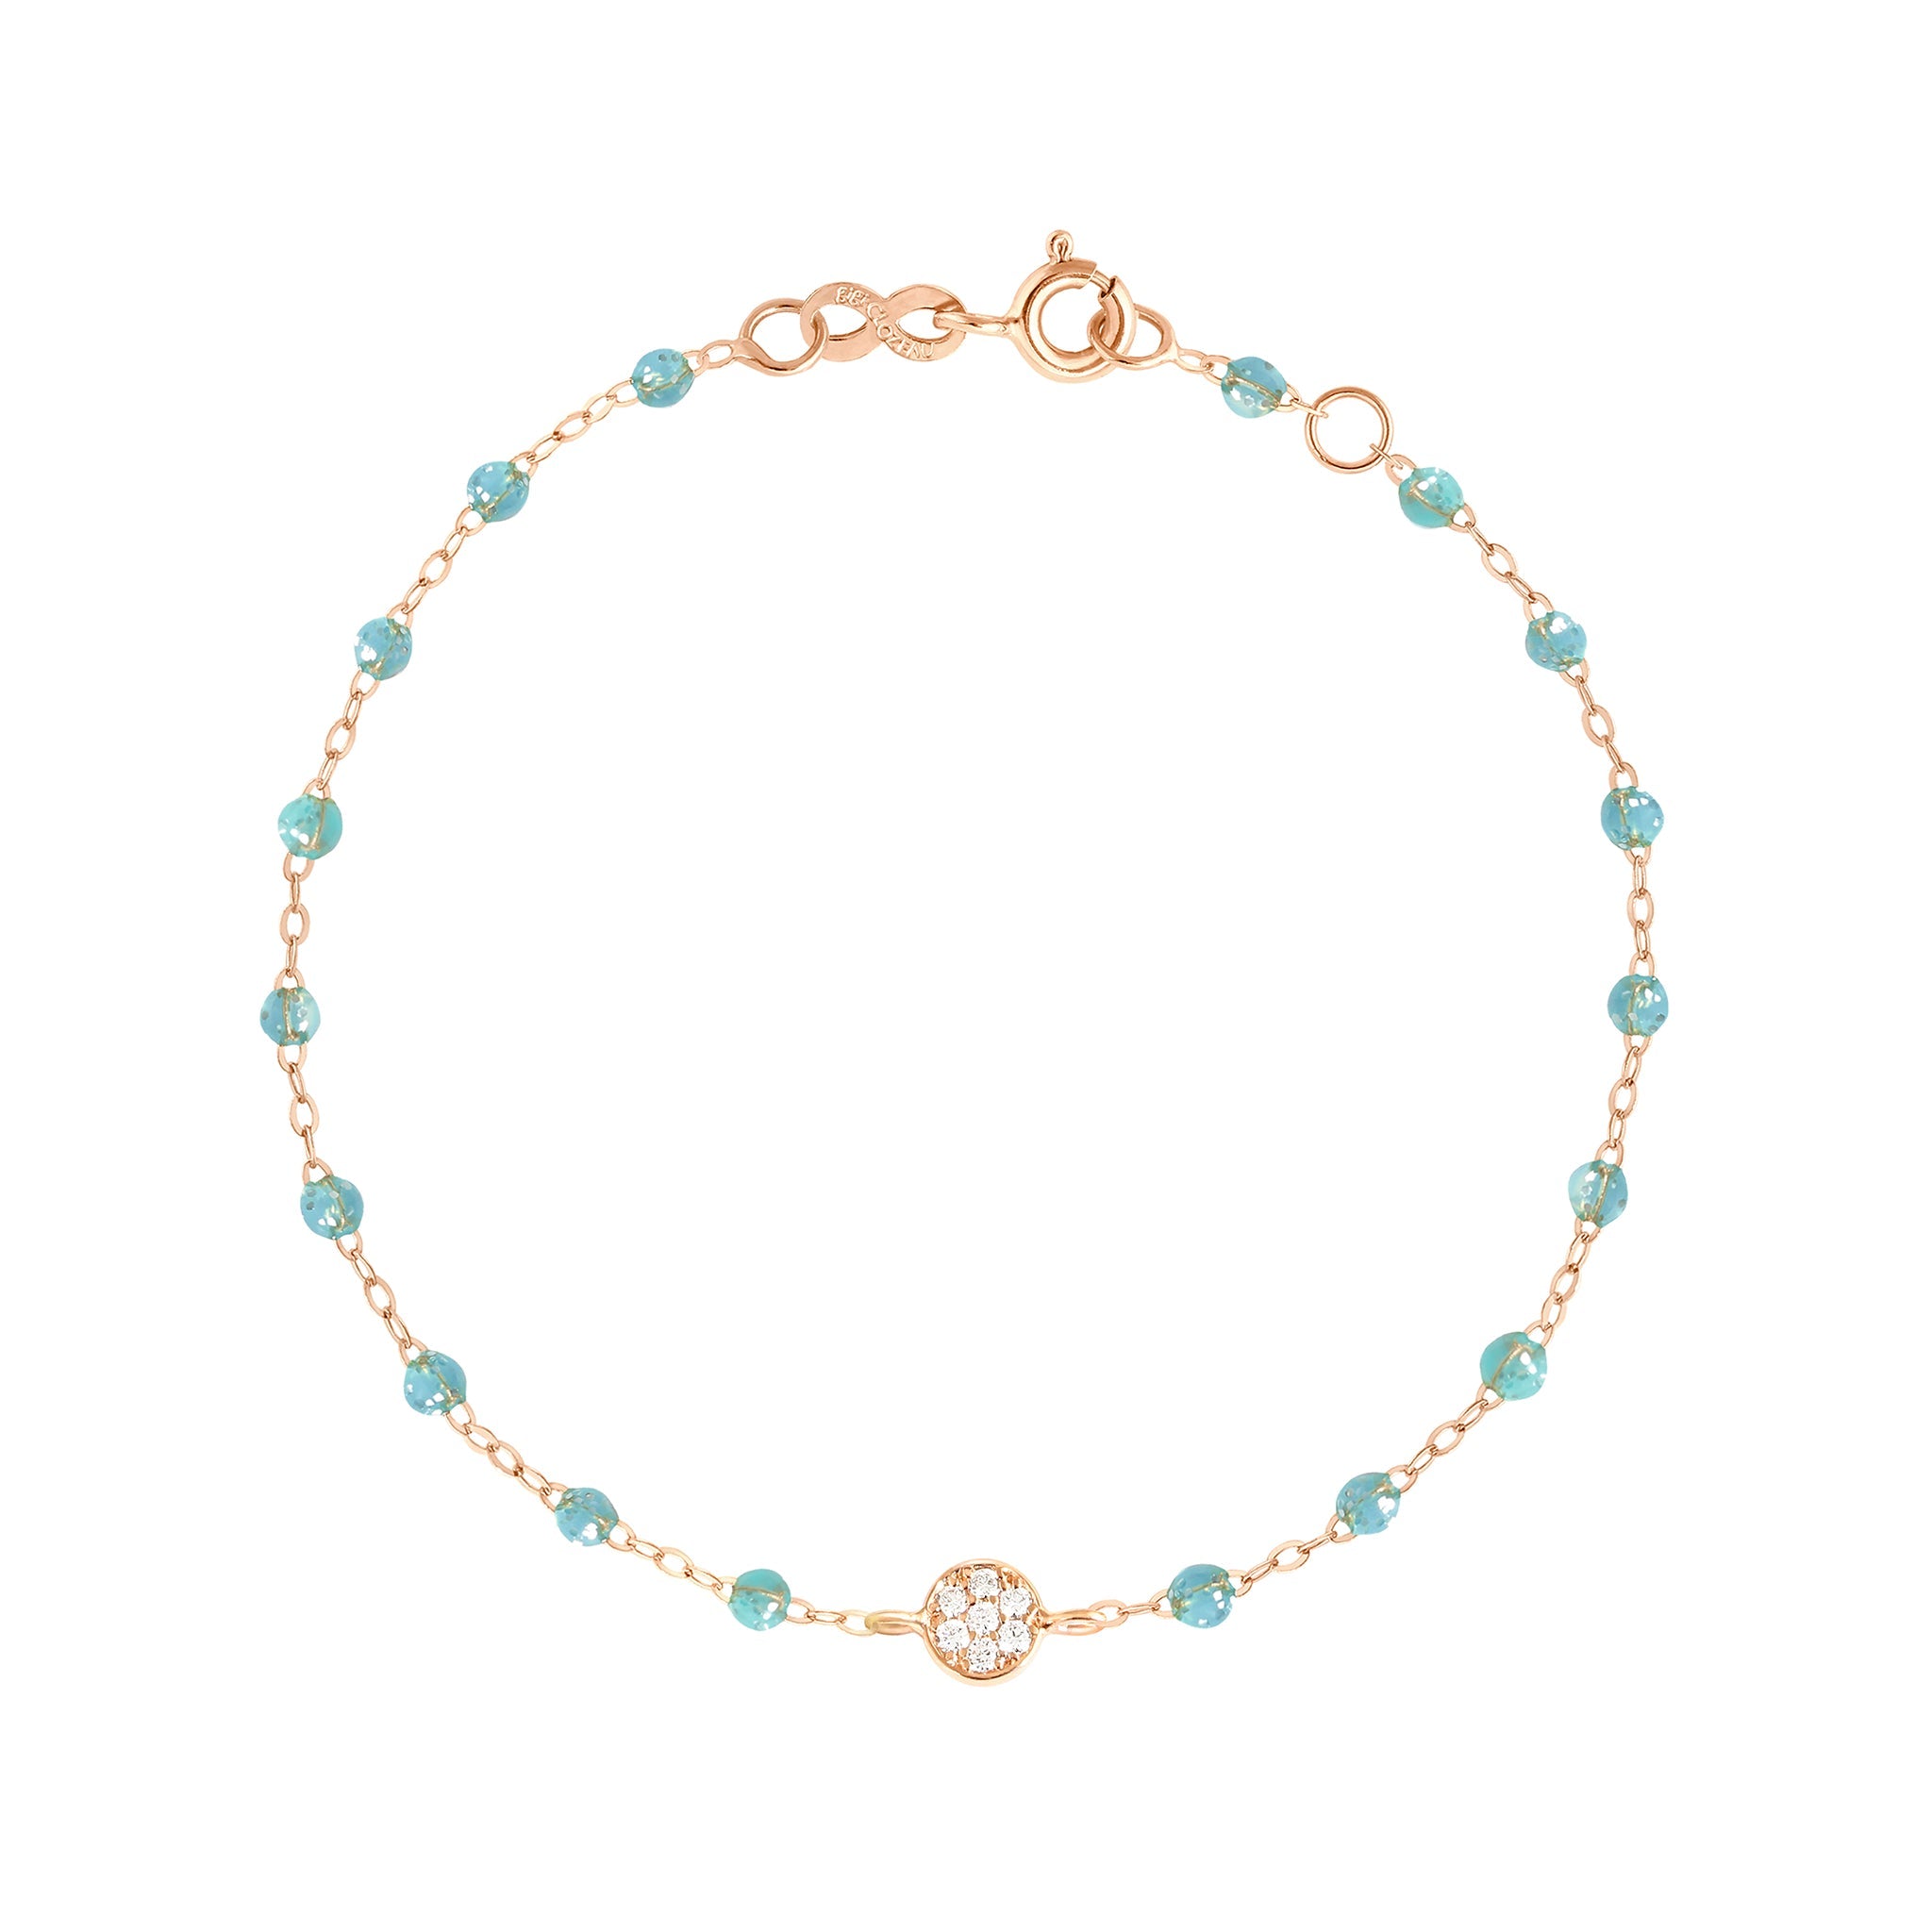 Bracelet aqua Puce diamants, or rose, 17 cm